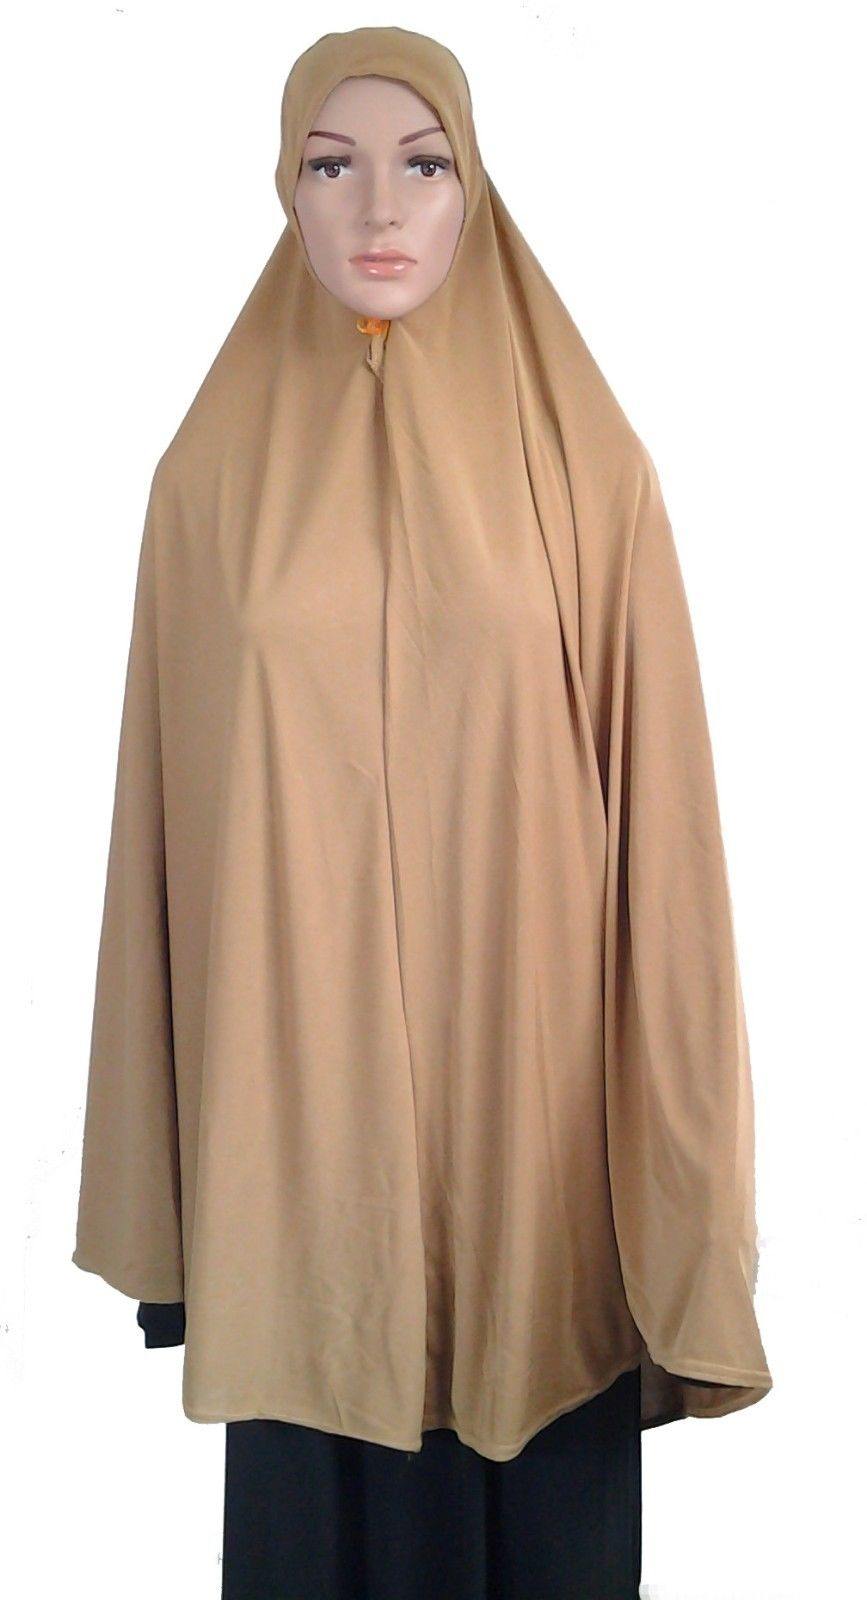 Khimar Muslim Hijab Fashion Islamic Scarf Polyester Crystal Hemp ASZ0788 - Arabian Shopping Zone